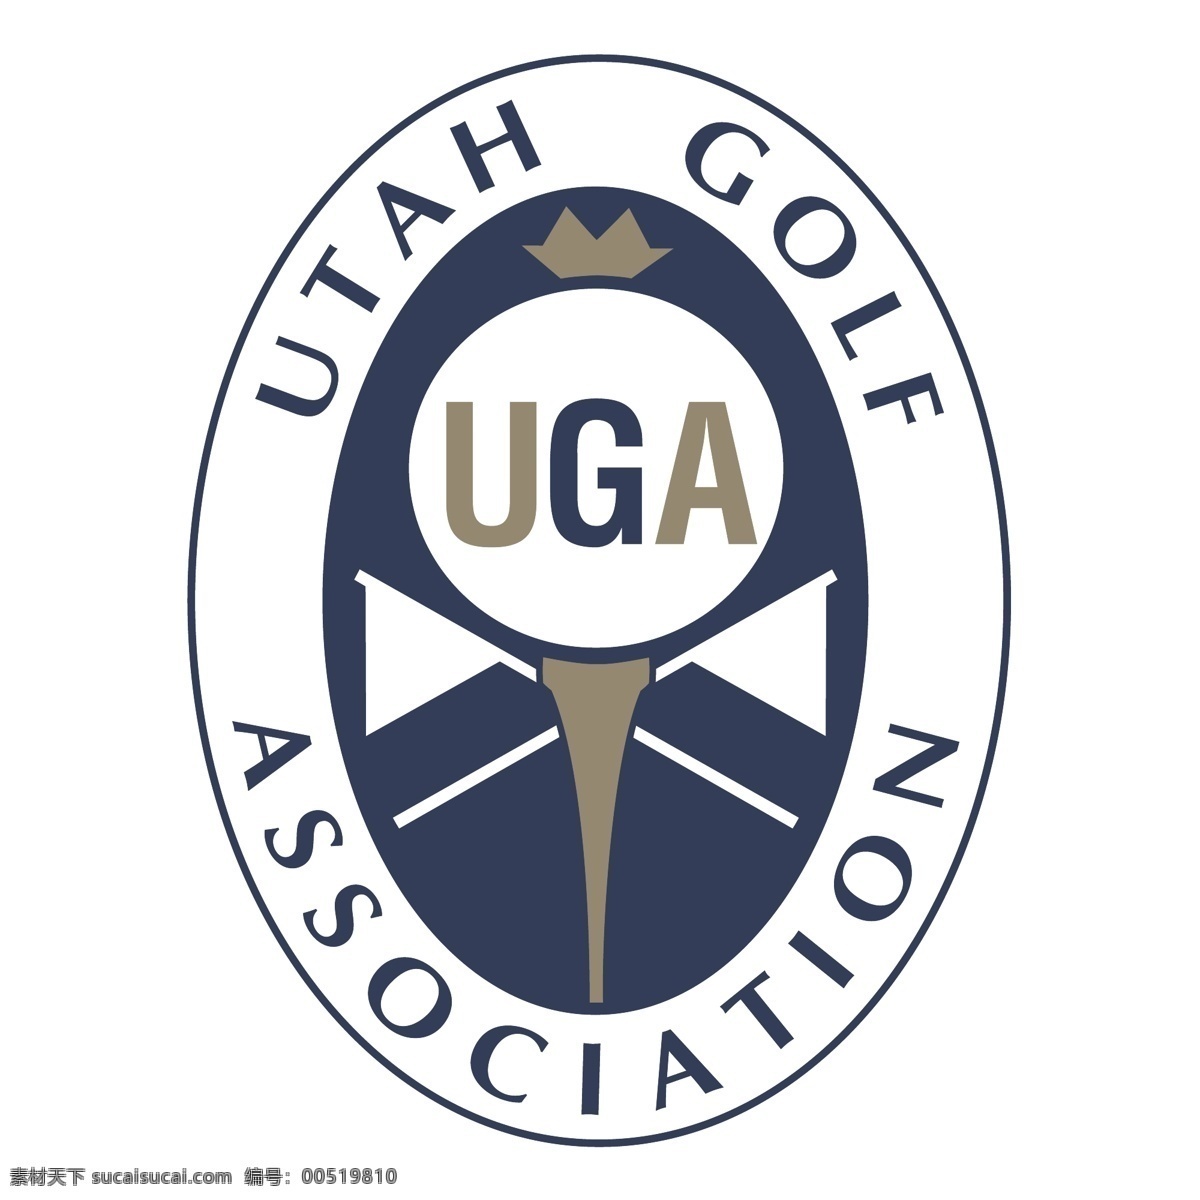 犹他州 高尔夫球 协会 高尔夫 高尔夫协会 犹他州高尔夫 矢量 女子 向量 职业 标志 矢量图 建筑家居